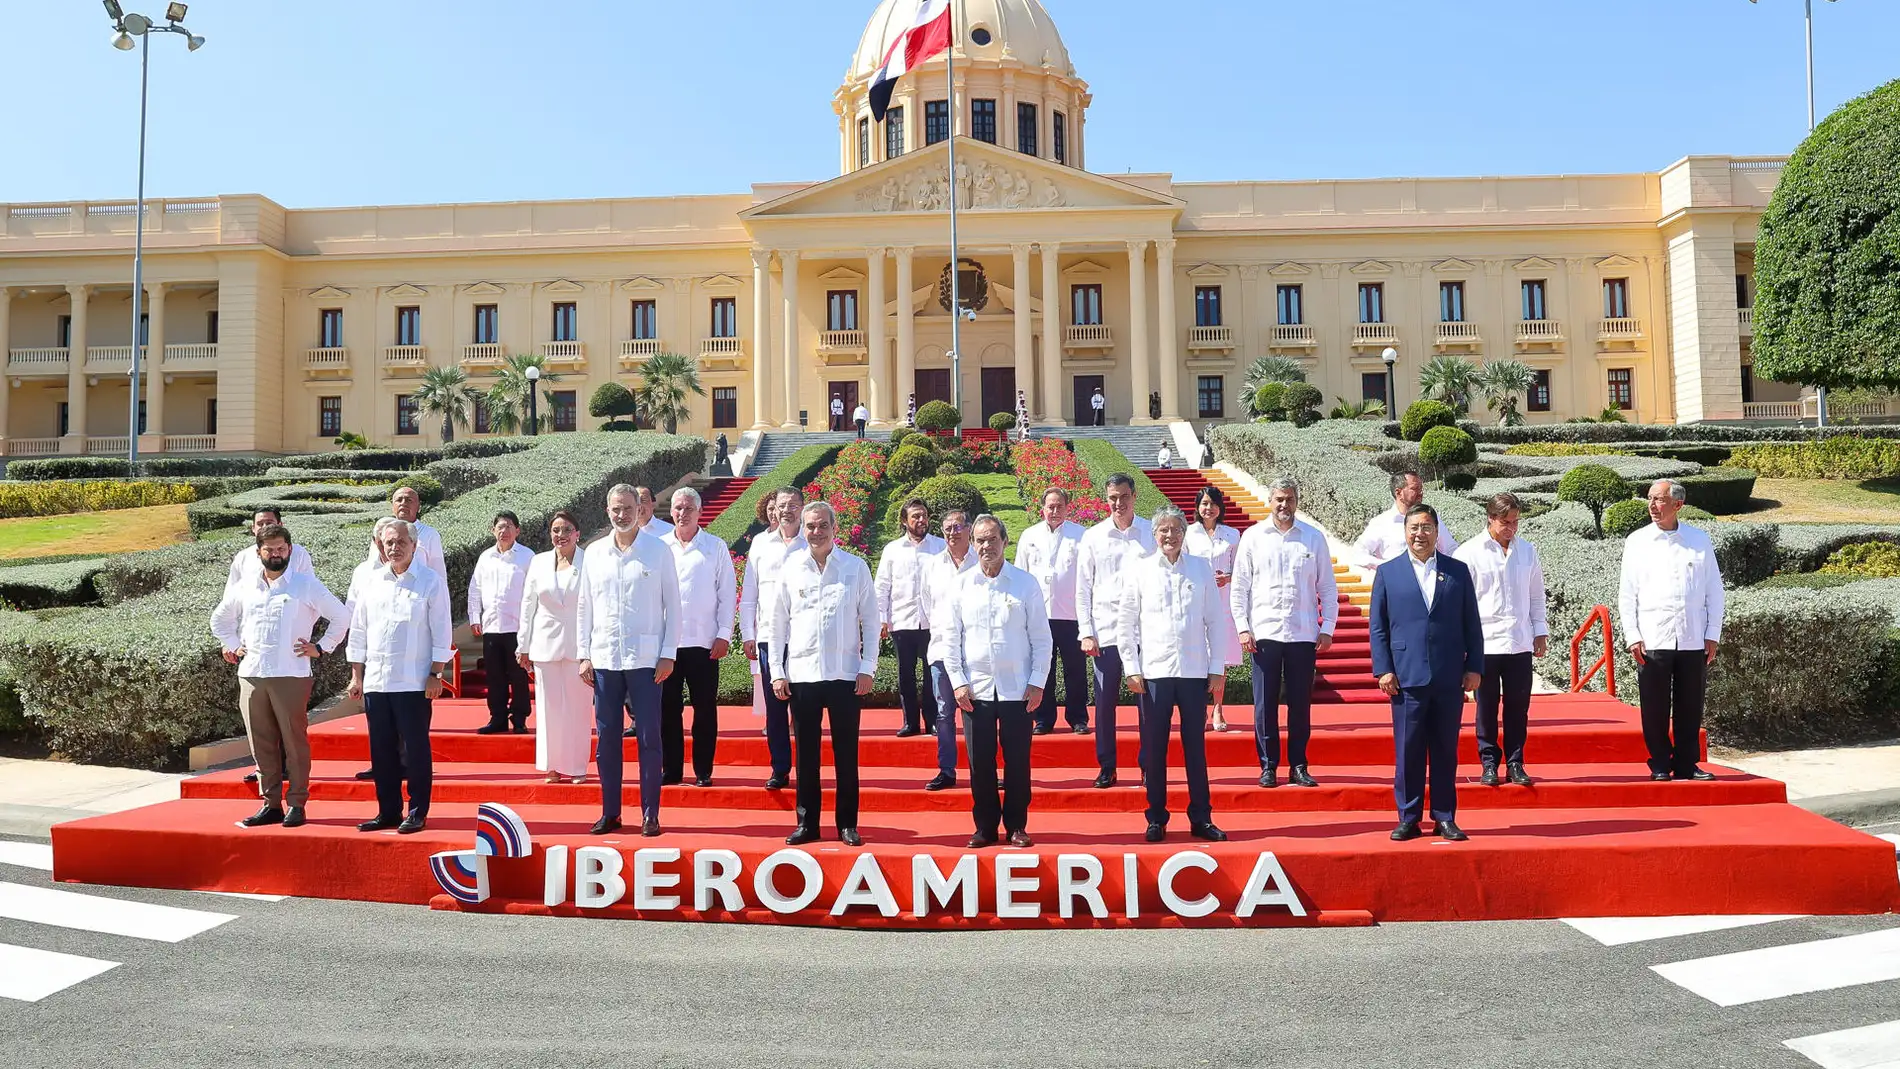 La Cumbre Iberoamericana cierra con consenso sus cuatro grandes objetivos